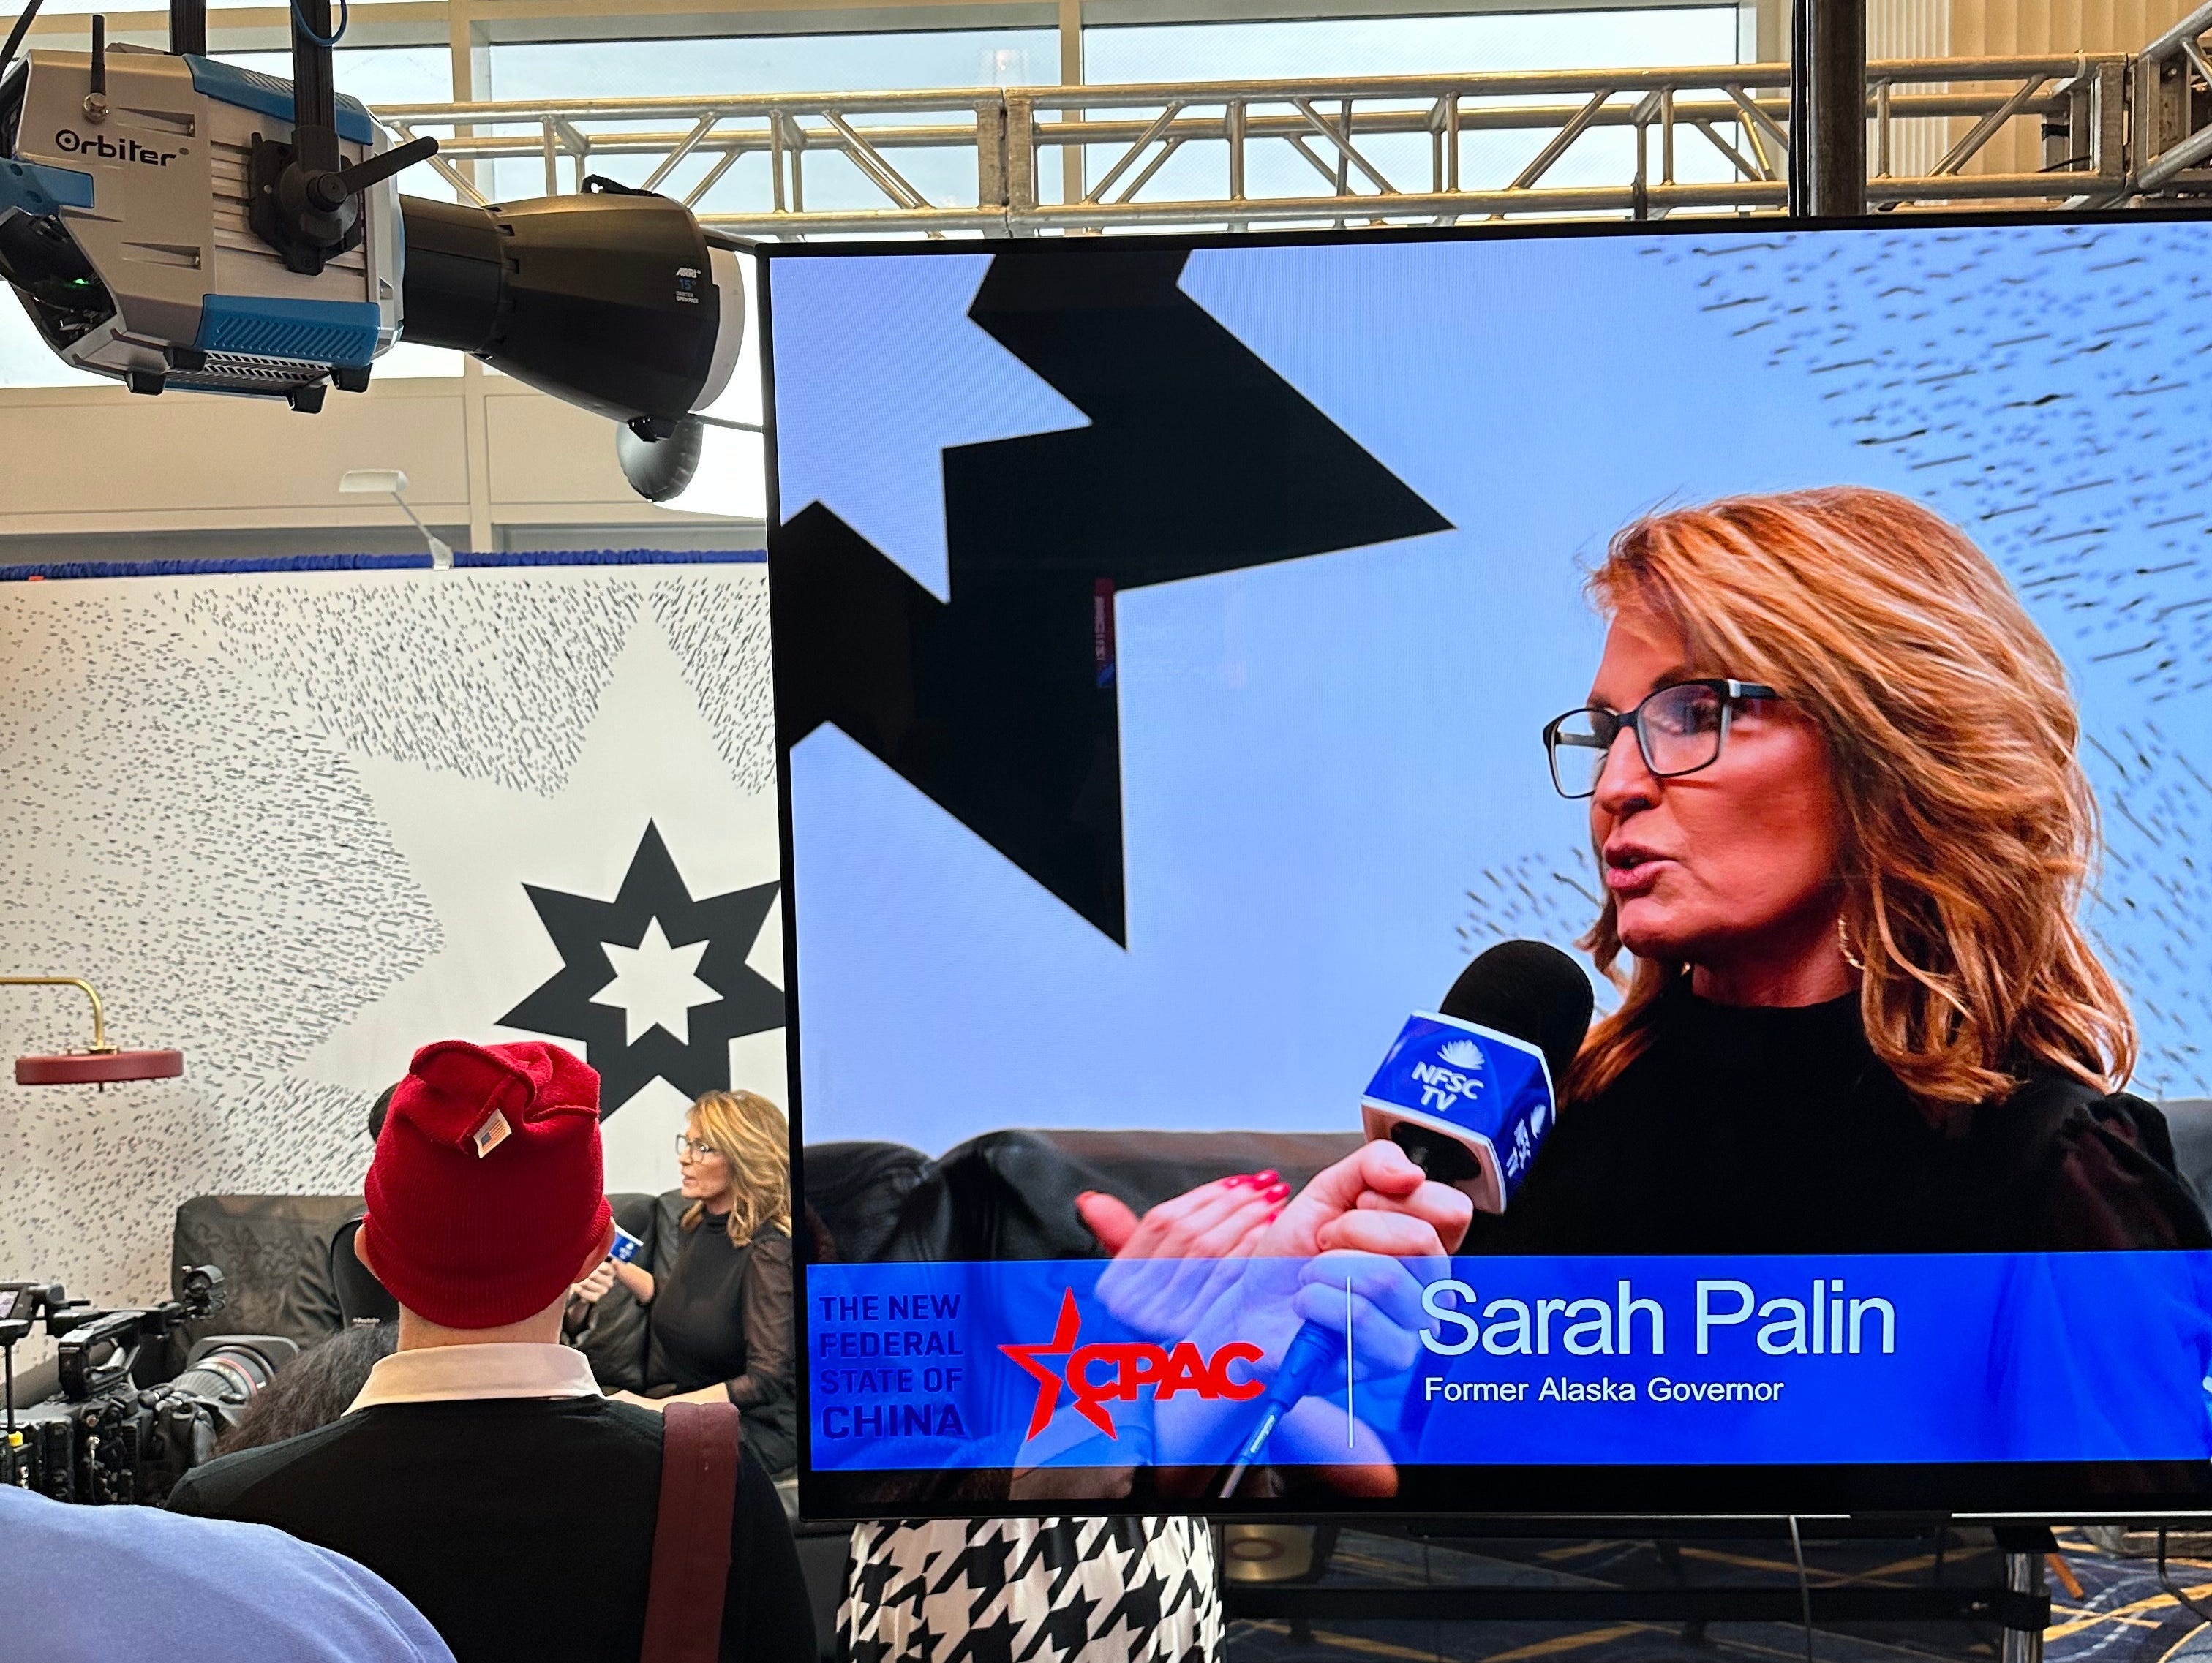 Palin spricht am 3. März 2023 an einem Medienstand zum „Neuen Bundesstaat China“ auf der CPAC.